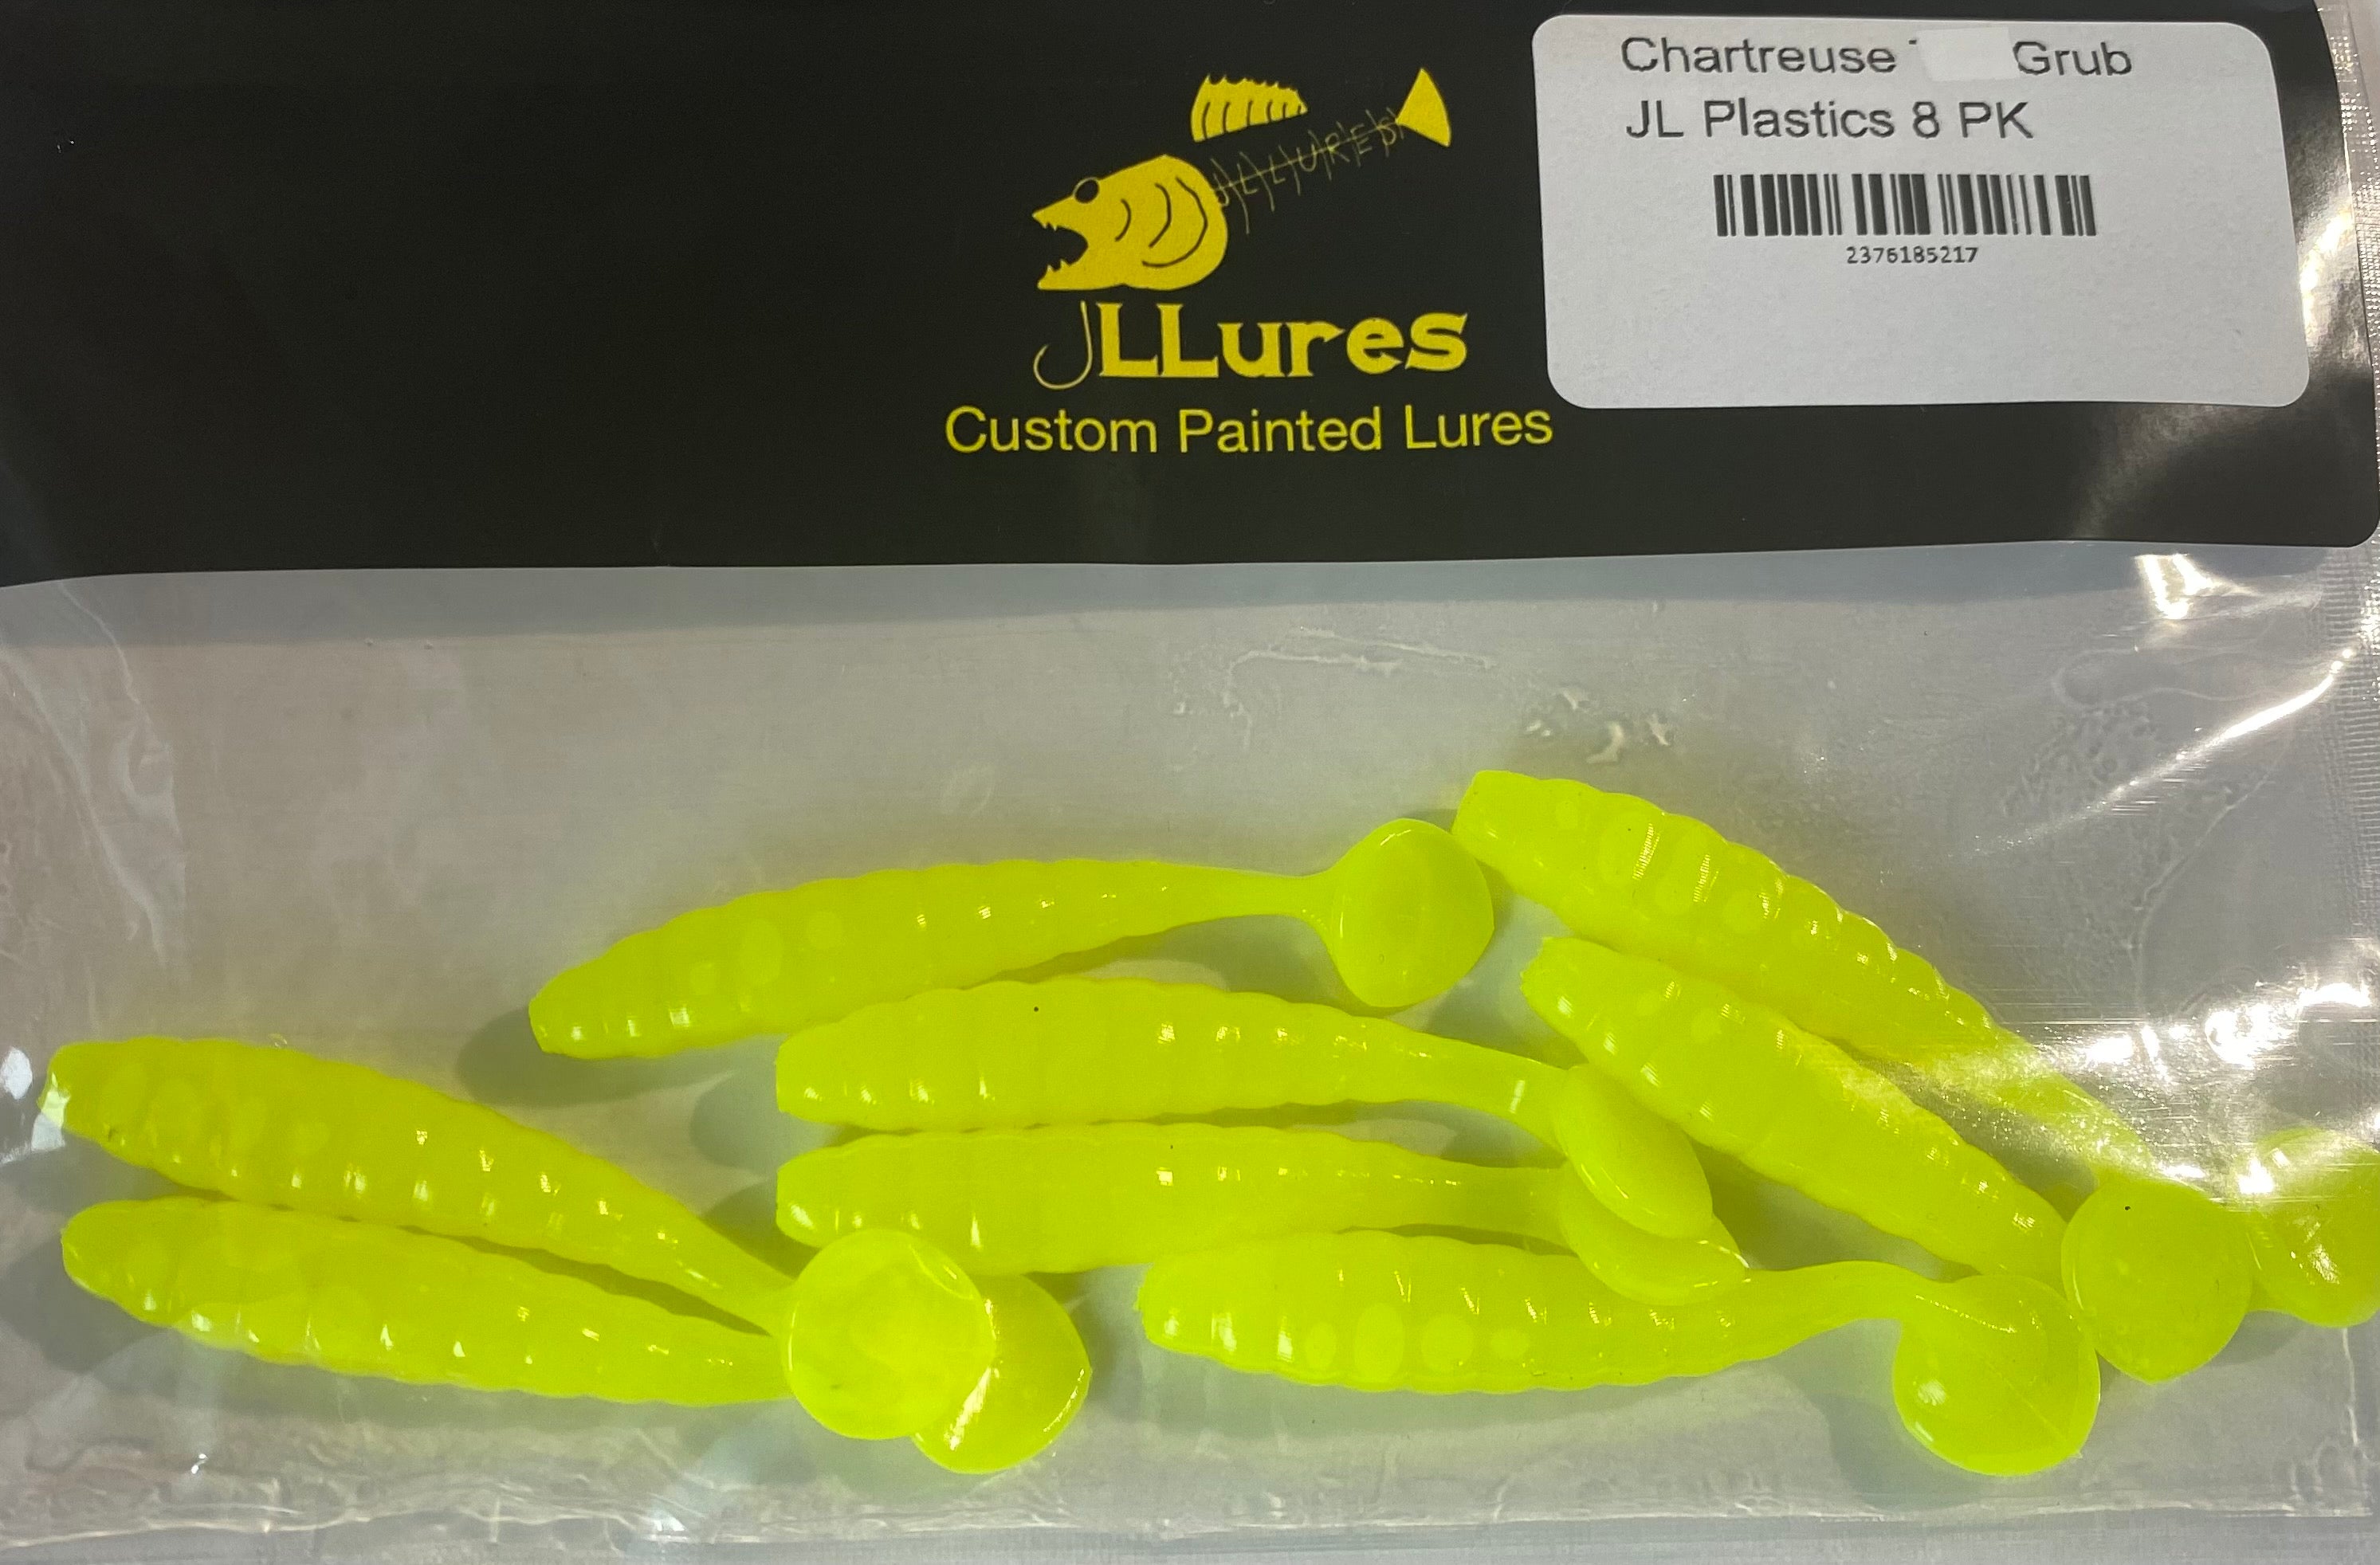 Chartreuse Grub JL Plastics